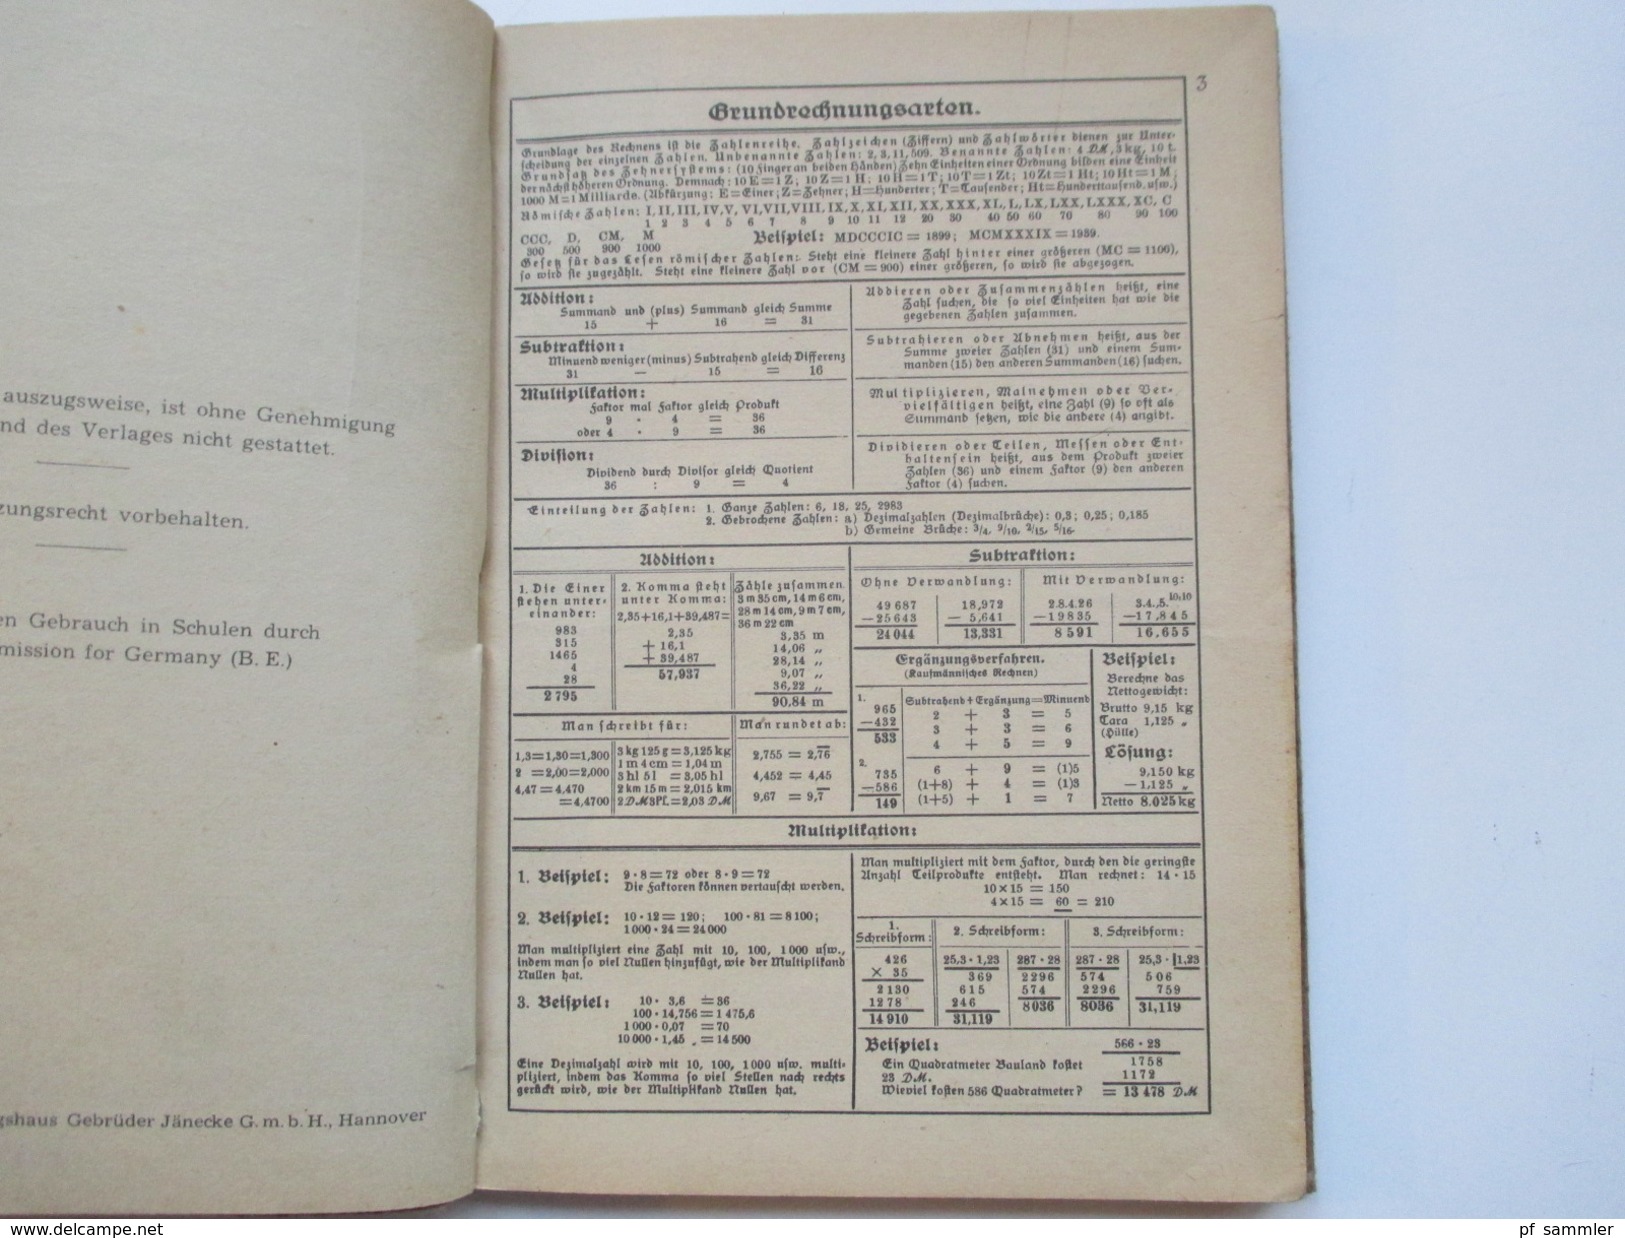 Schulbuch 1949 Formeln Und Tabellen Für Das Metallgewerbe. Gebrüder Jänecke Buchverlag Hannover. Viele Abbildungen!! - Libri Scolastici